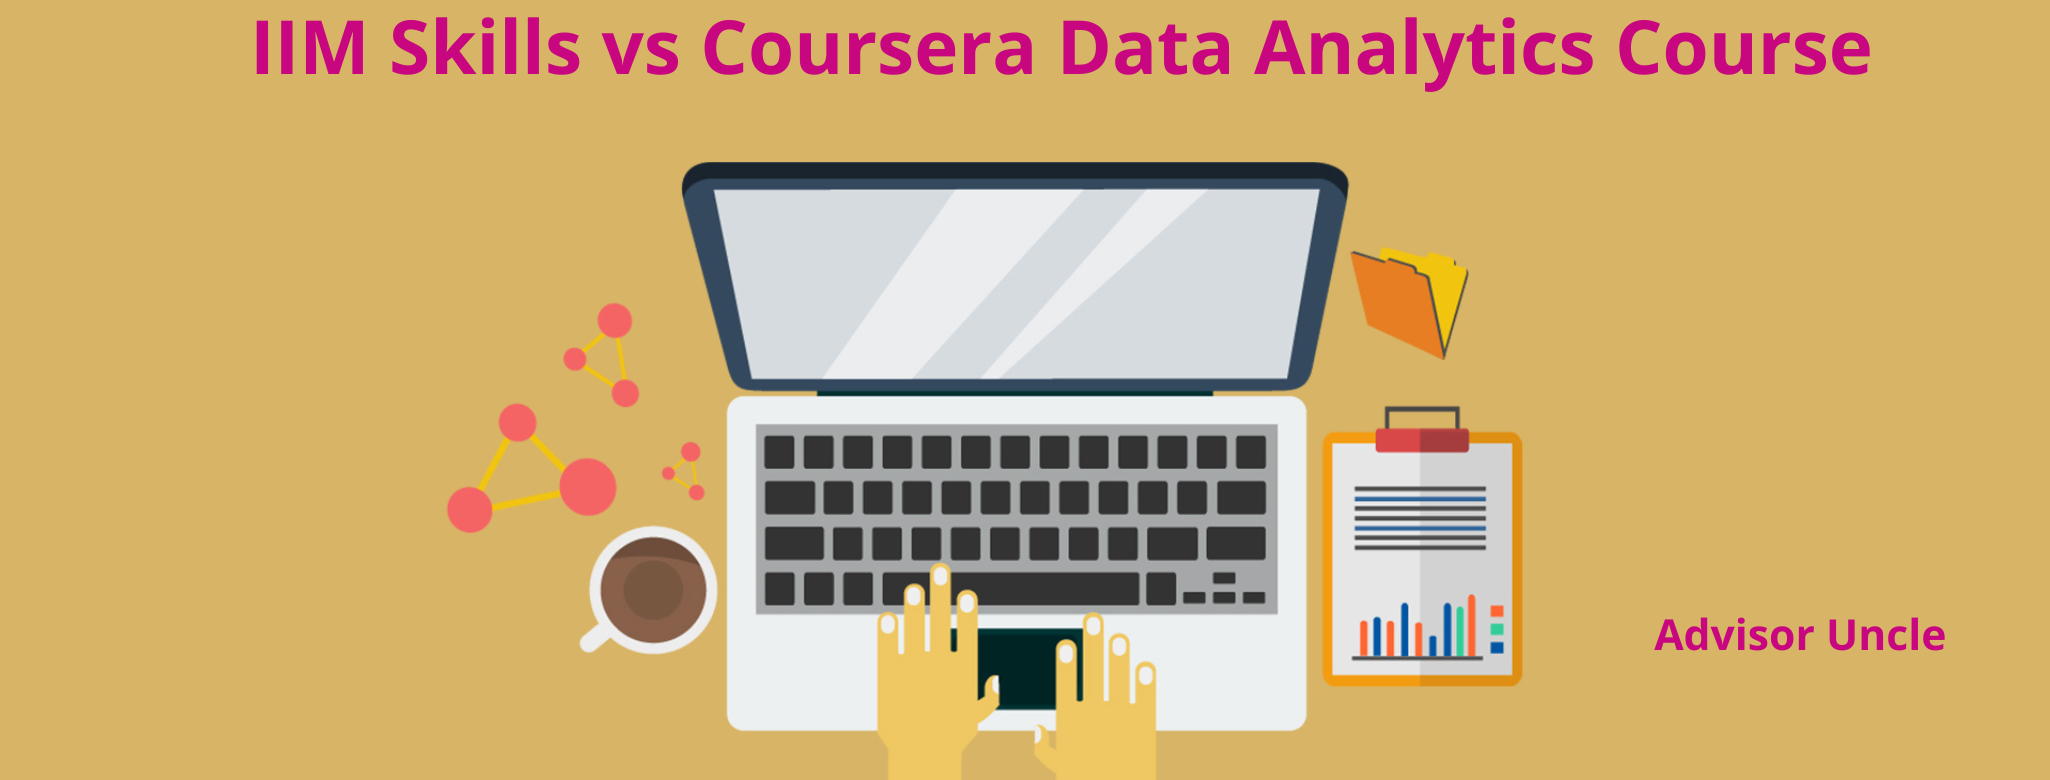 IIM Skills vs Coursera Data Analytics Course